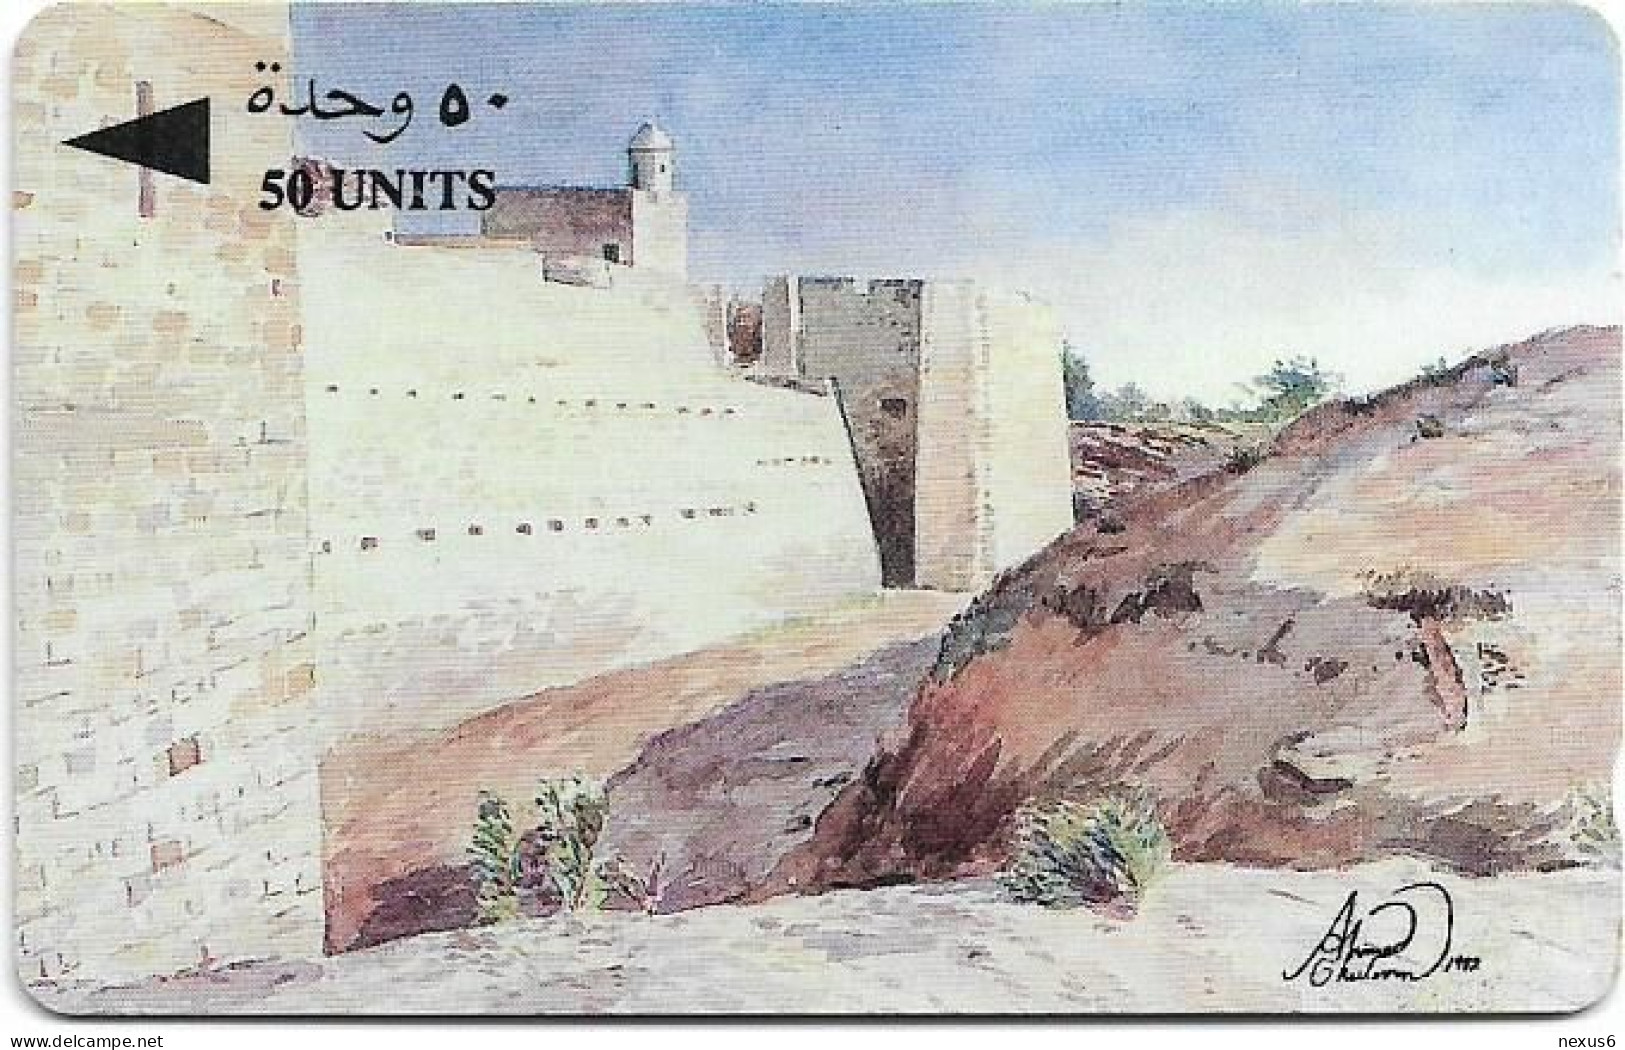 Bahrain - Batelco (GPT) - Qalat Al Bahrain Fort - 18BAHA - 1993, 40.000ex, Used - Bahrain